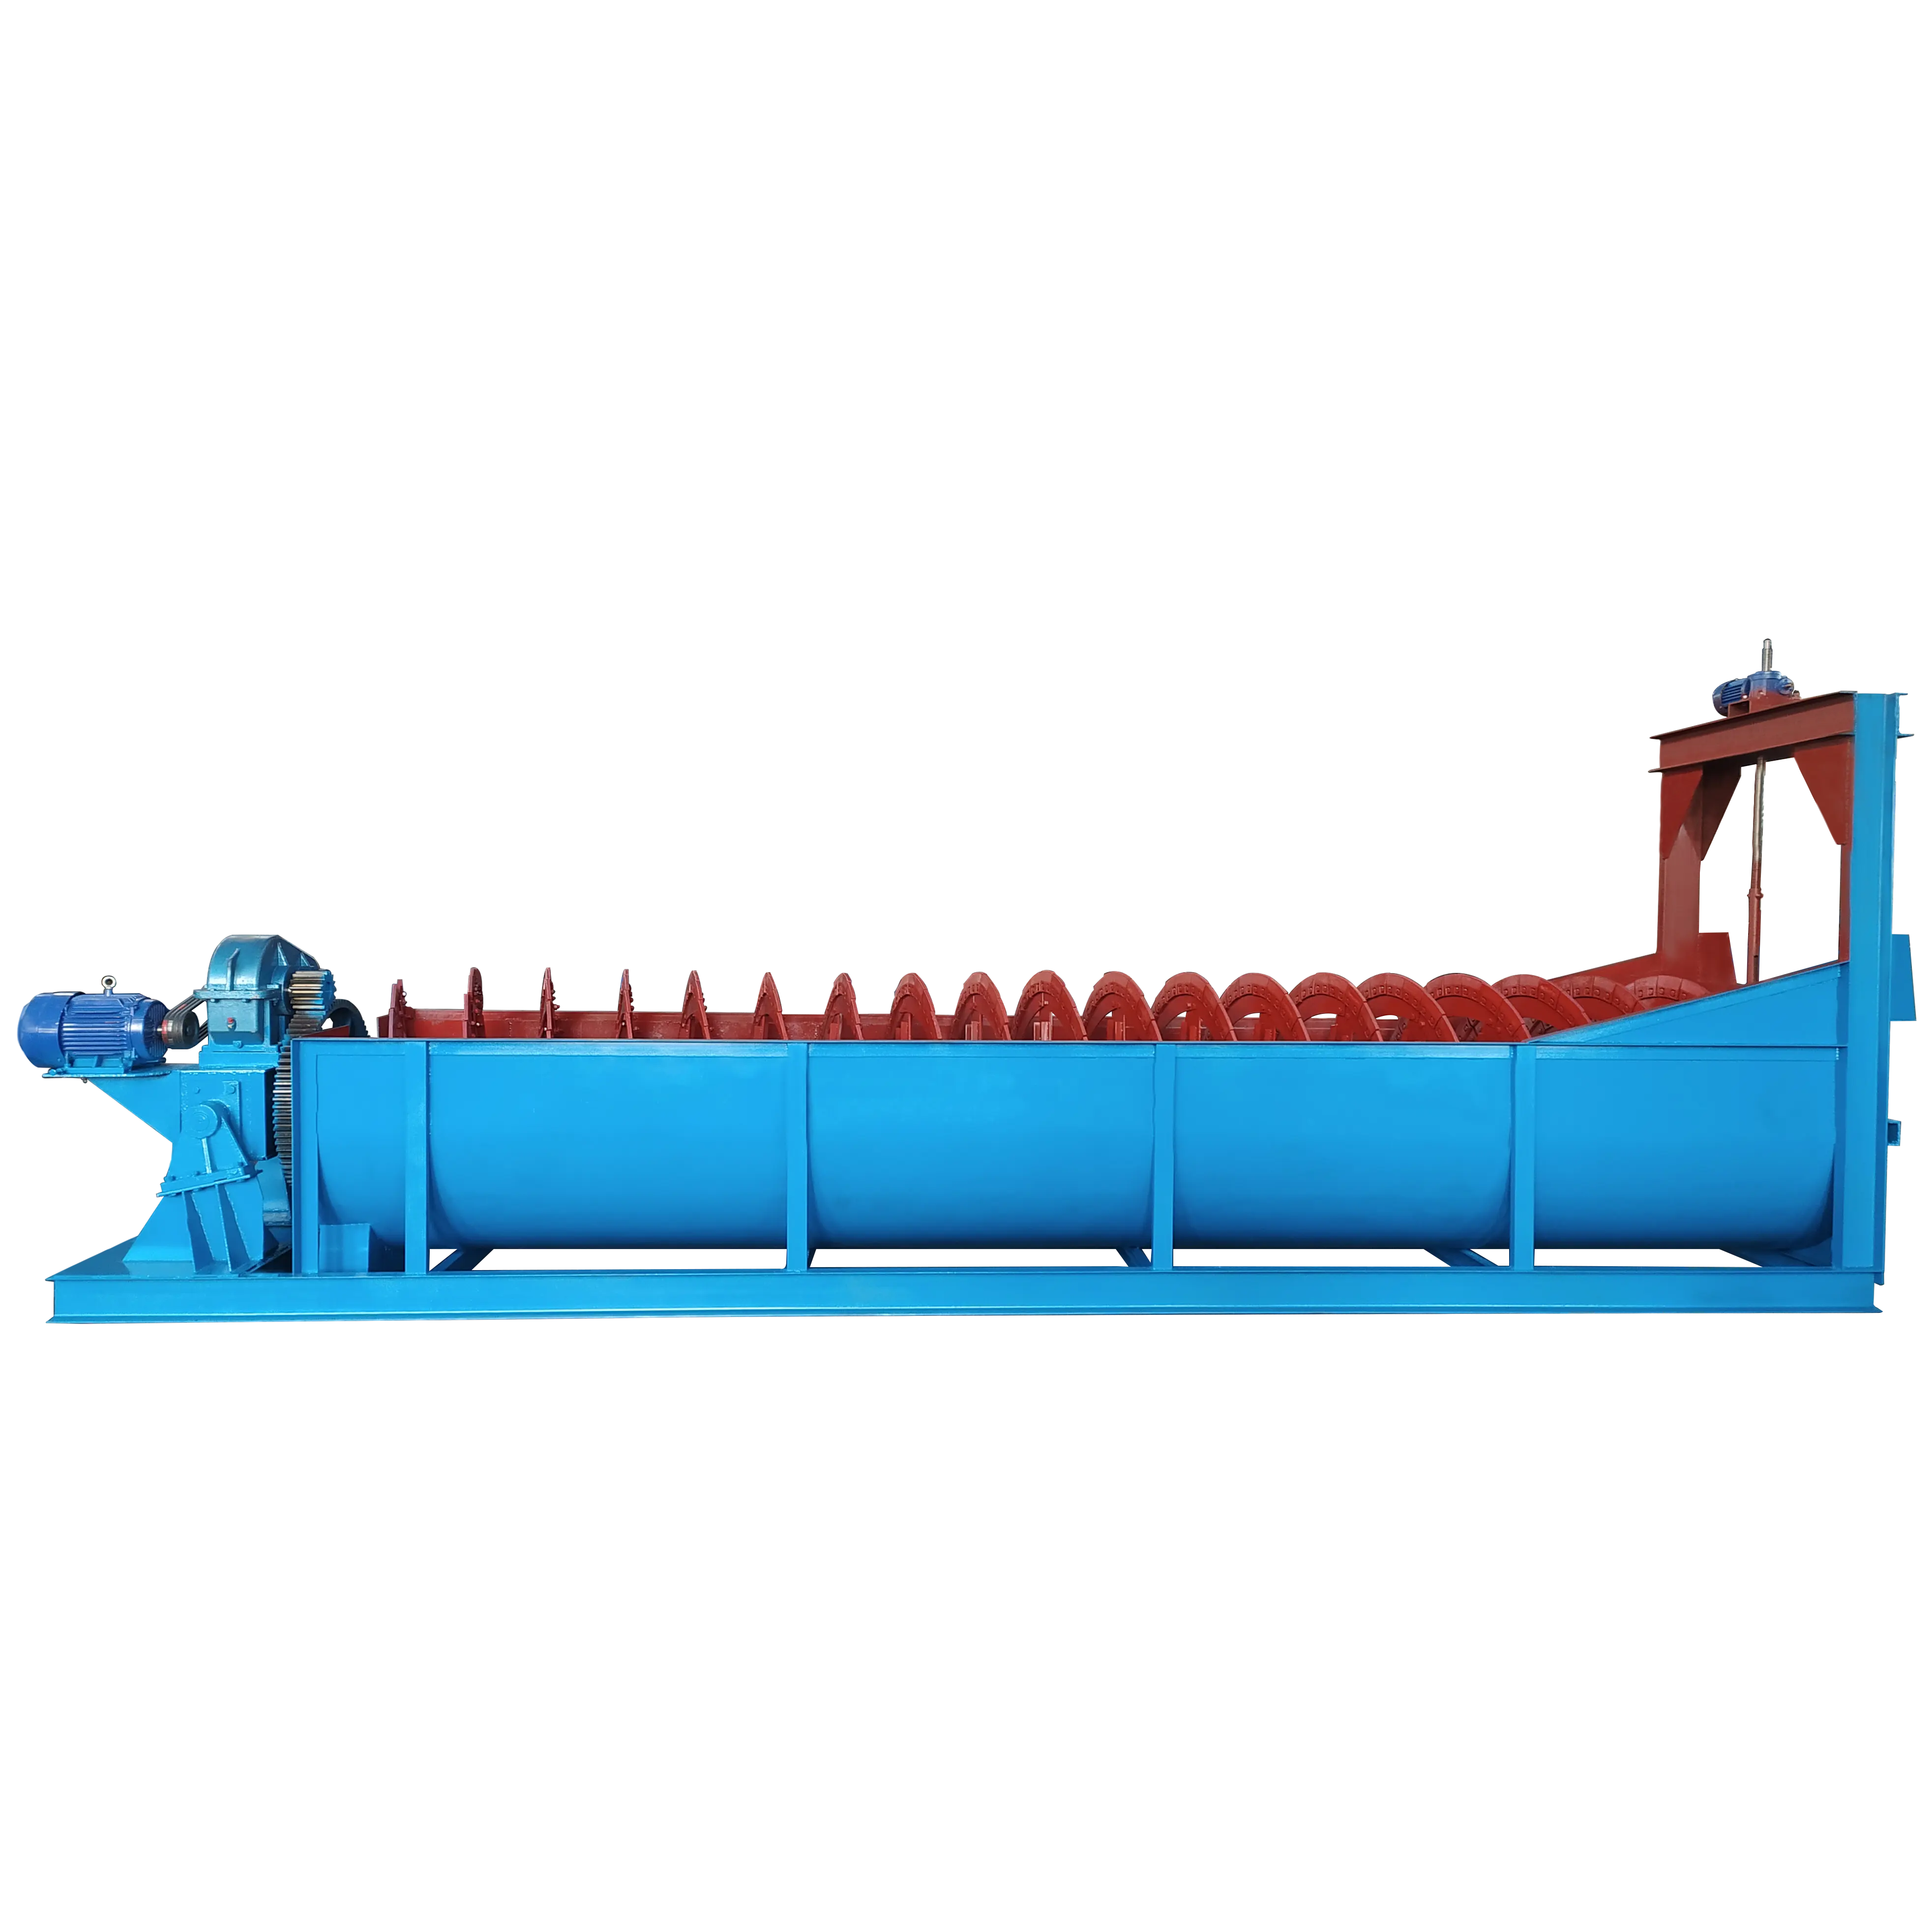 China Toonaangevende Fabrikant Grote Zandcapaciteit Max 13700T/D Mijnafscheider Machine Spiraalvormige Classificator